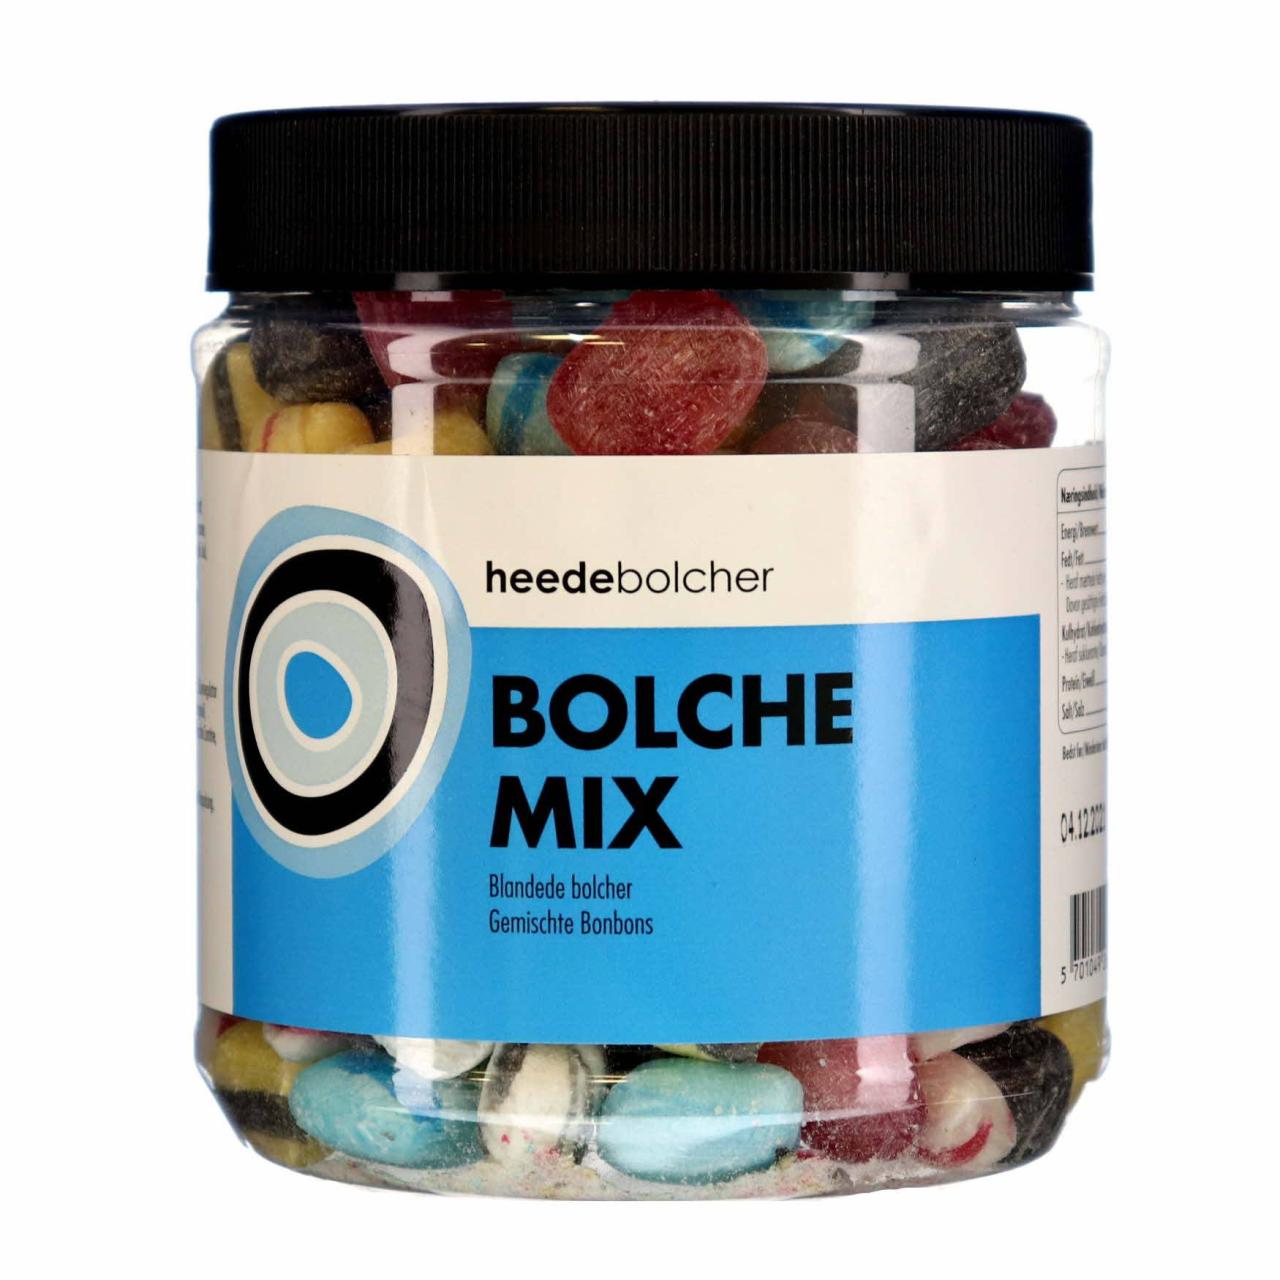 Heede Bolche Mix Dose 900g